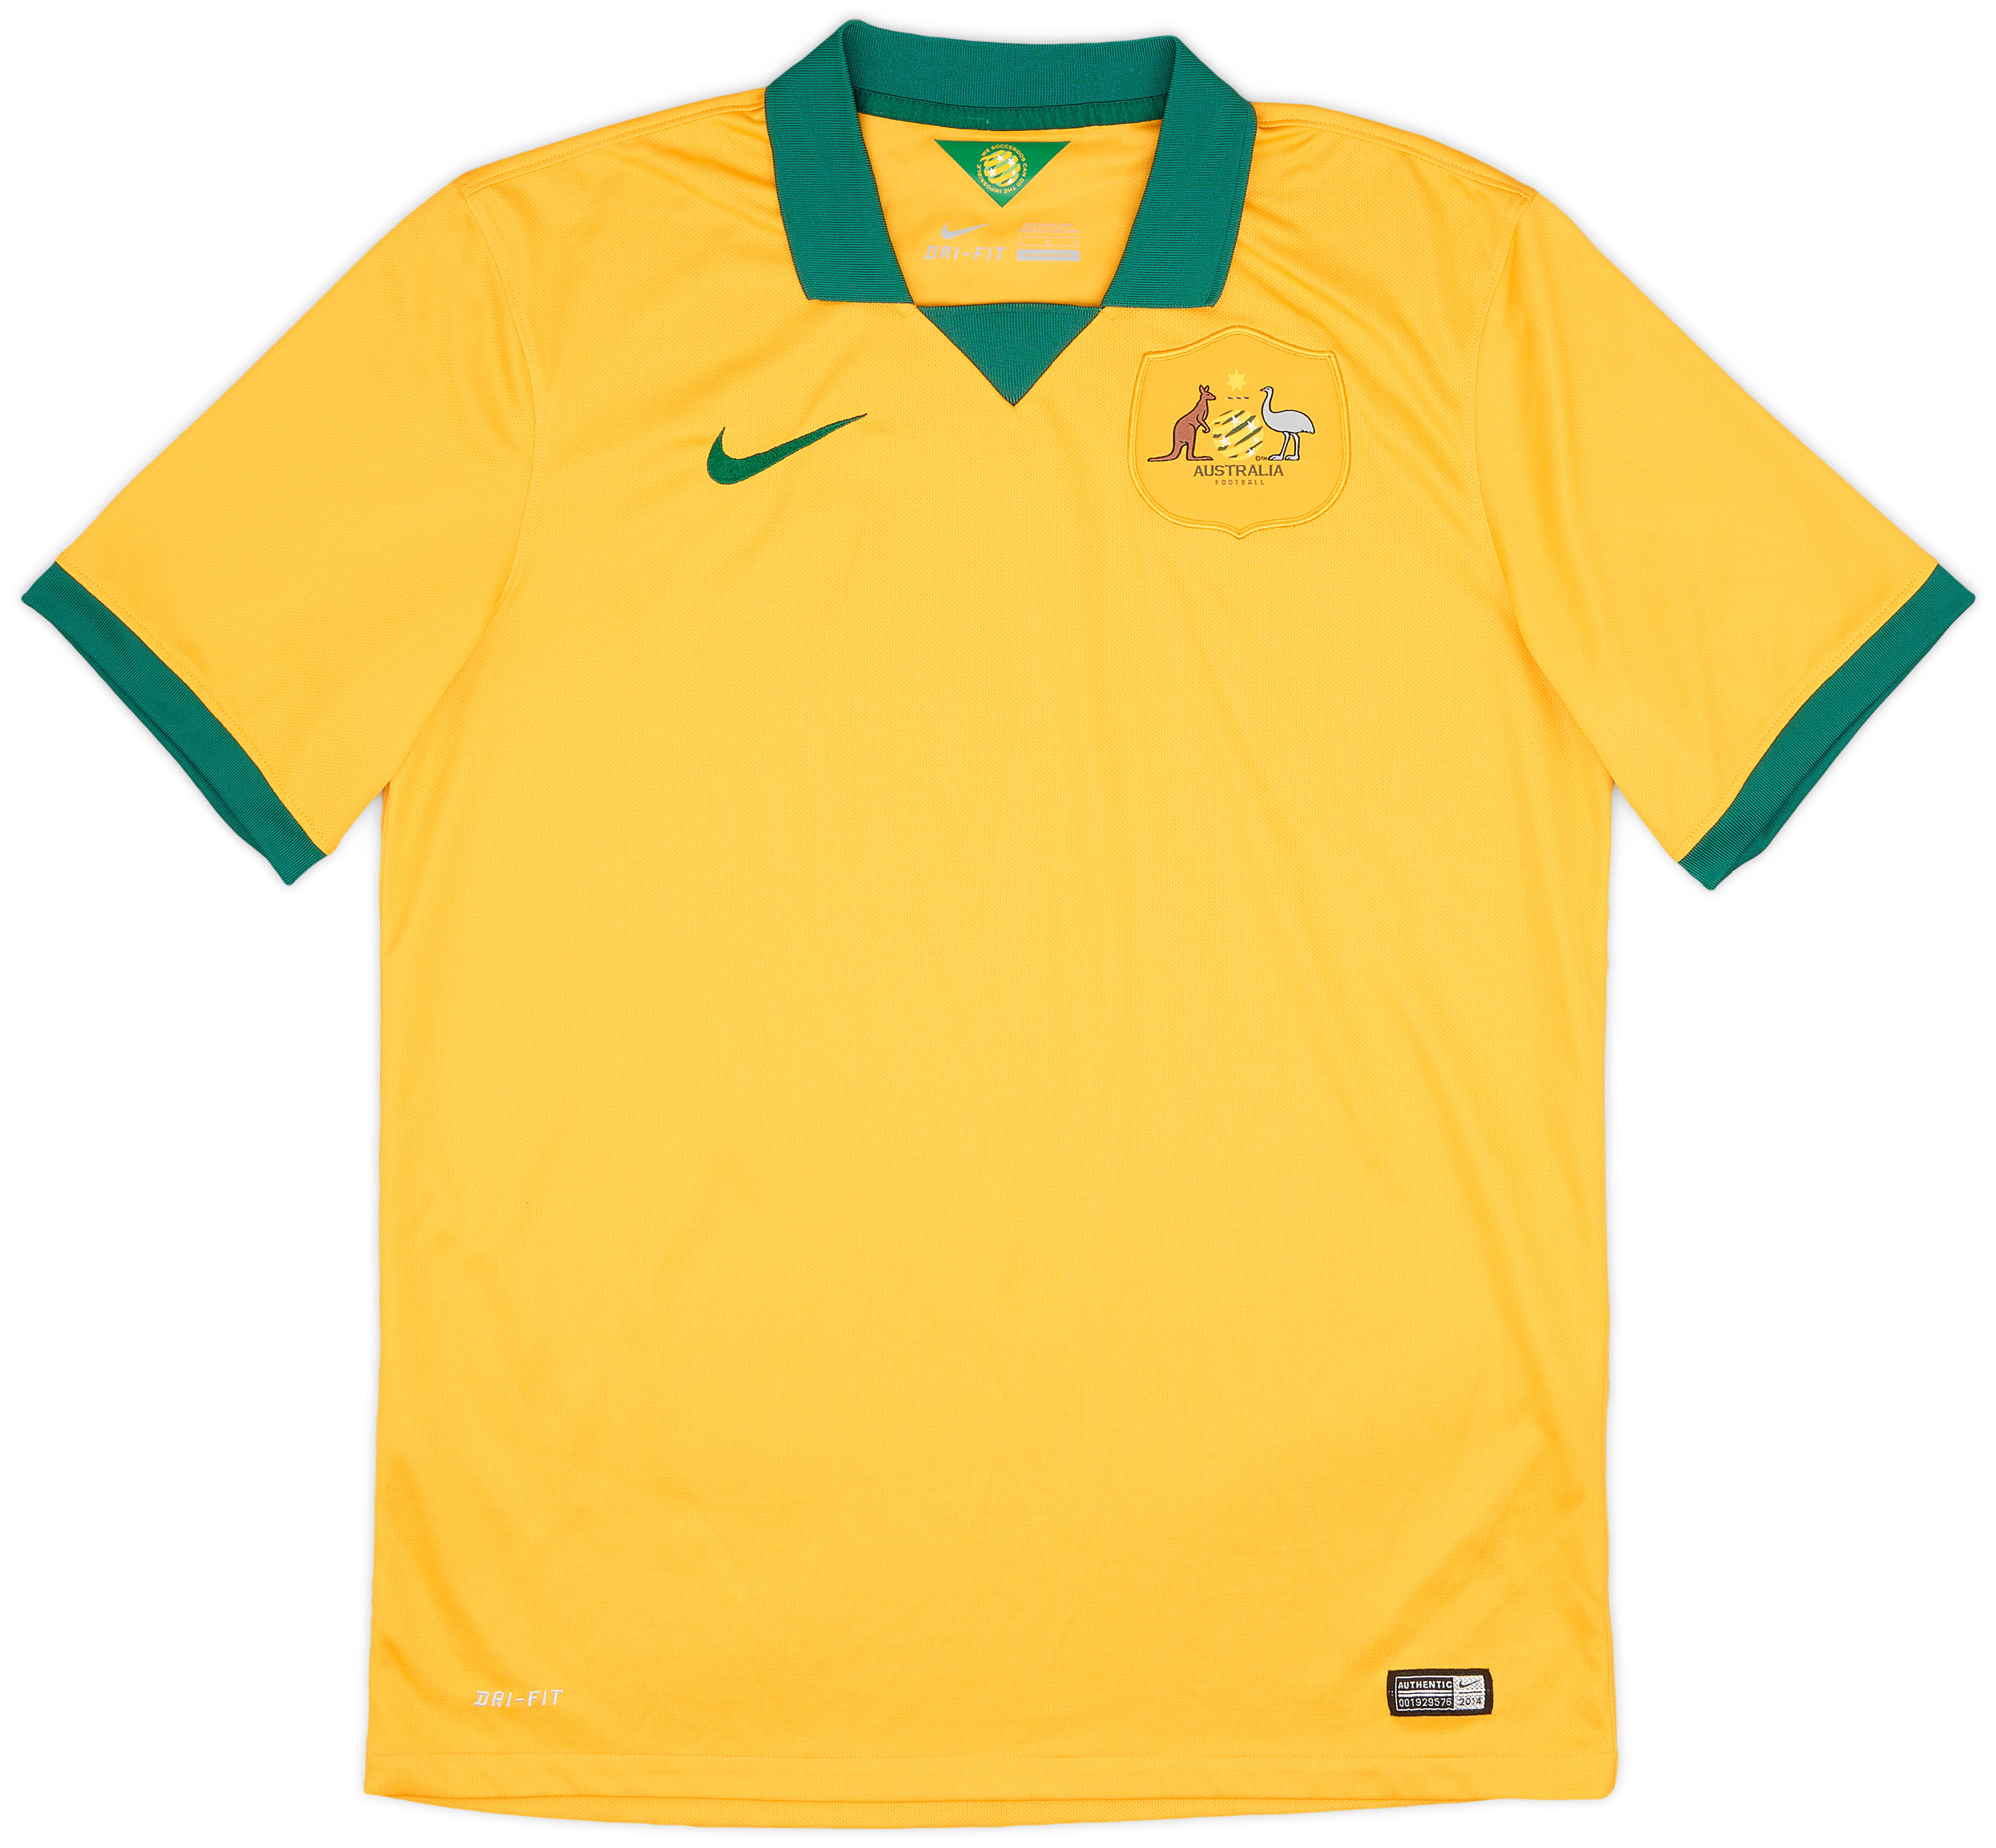 Retro Australia Shirt